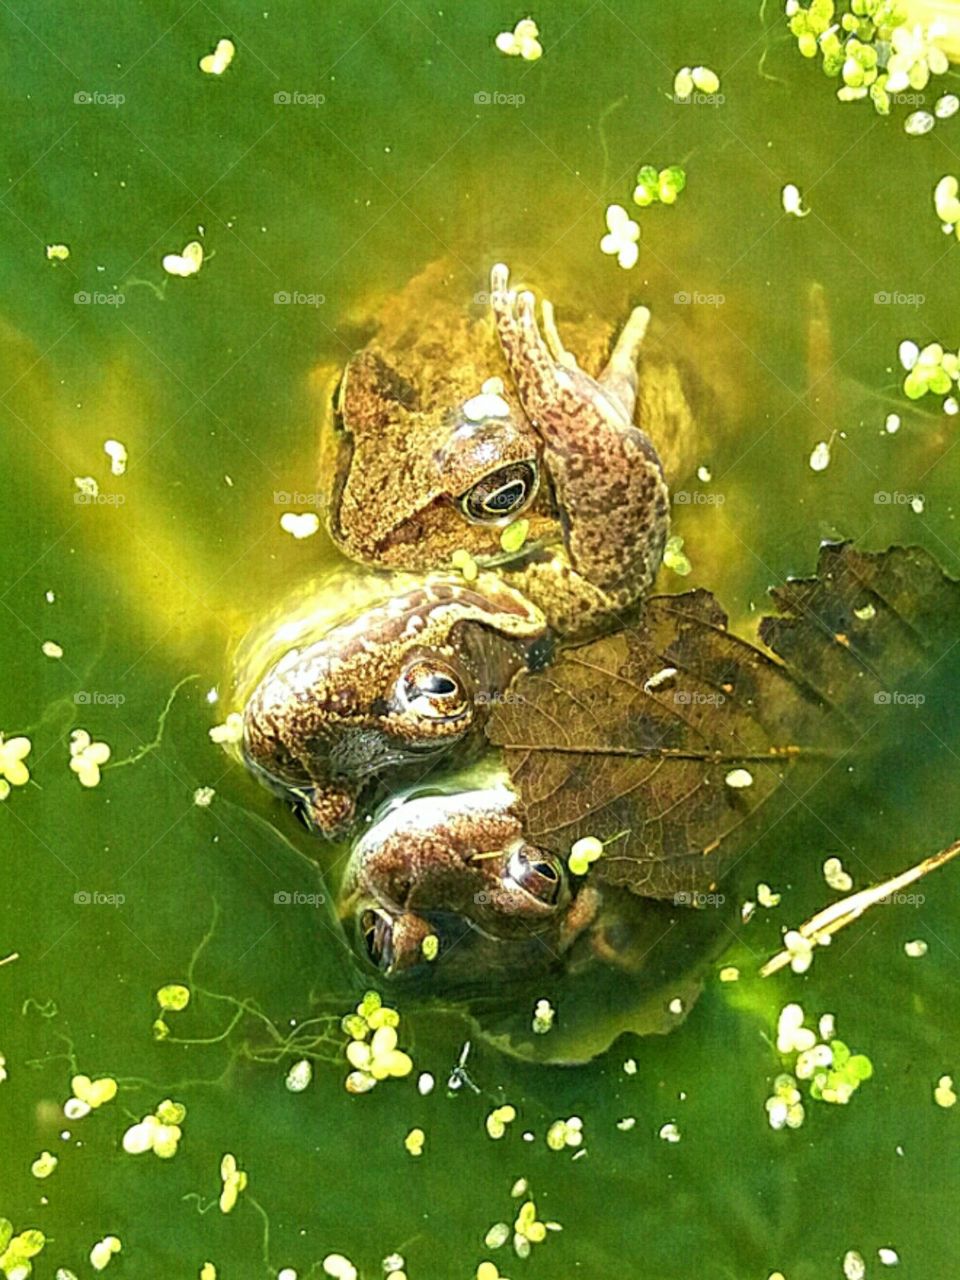 Frog mating/Accouplement de grenouilles